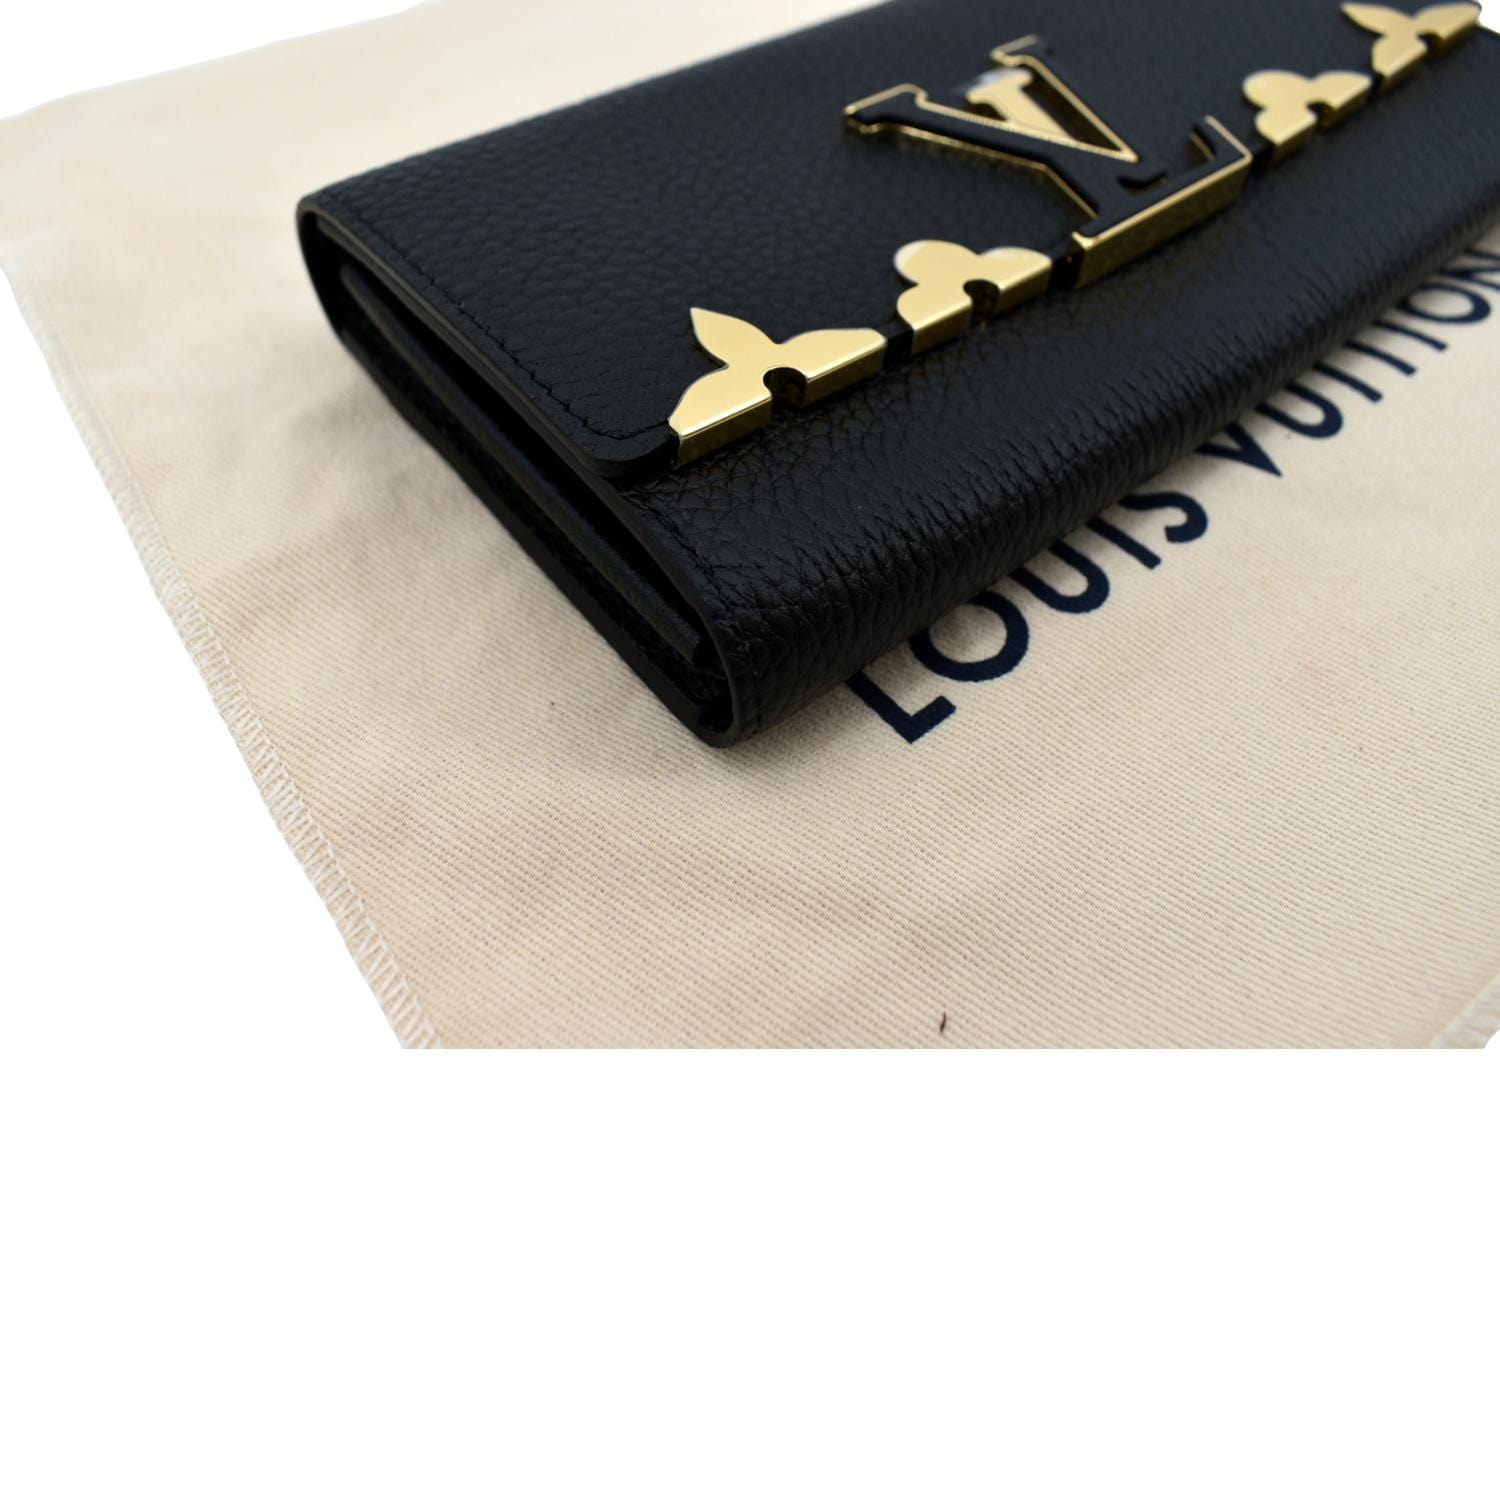 Louis Vuitton Black Taurillon Ab Capucines Wallet